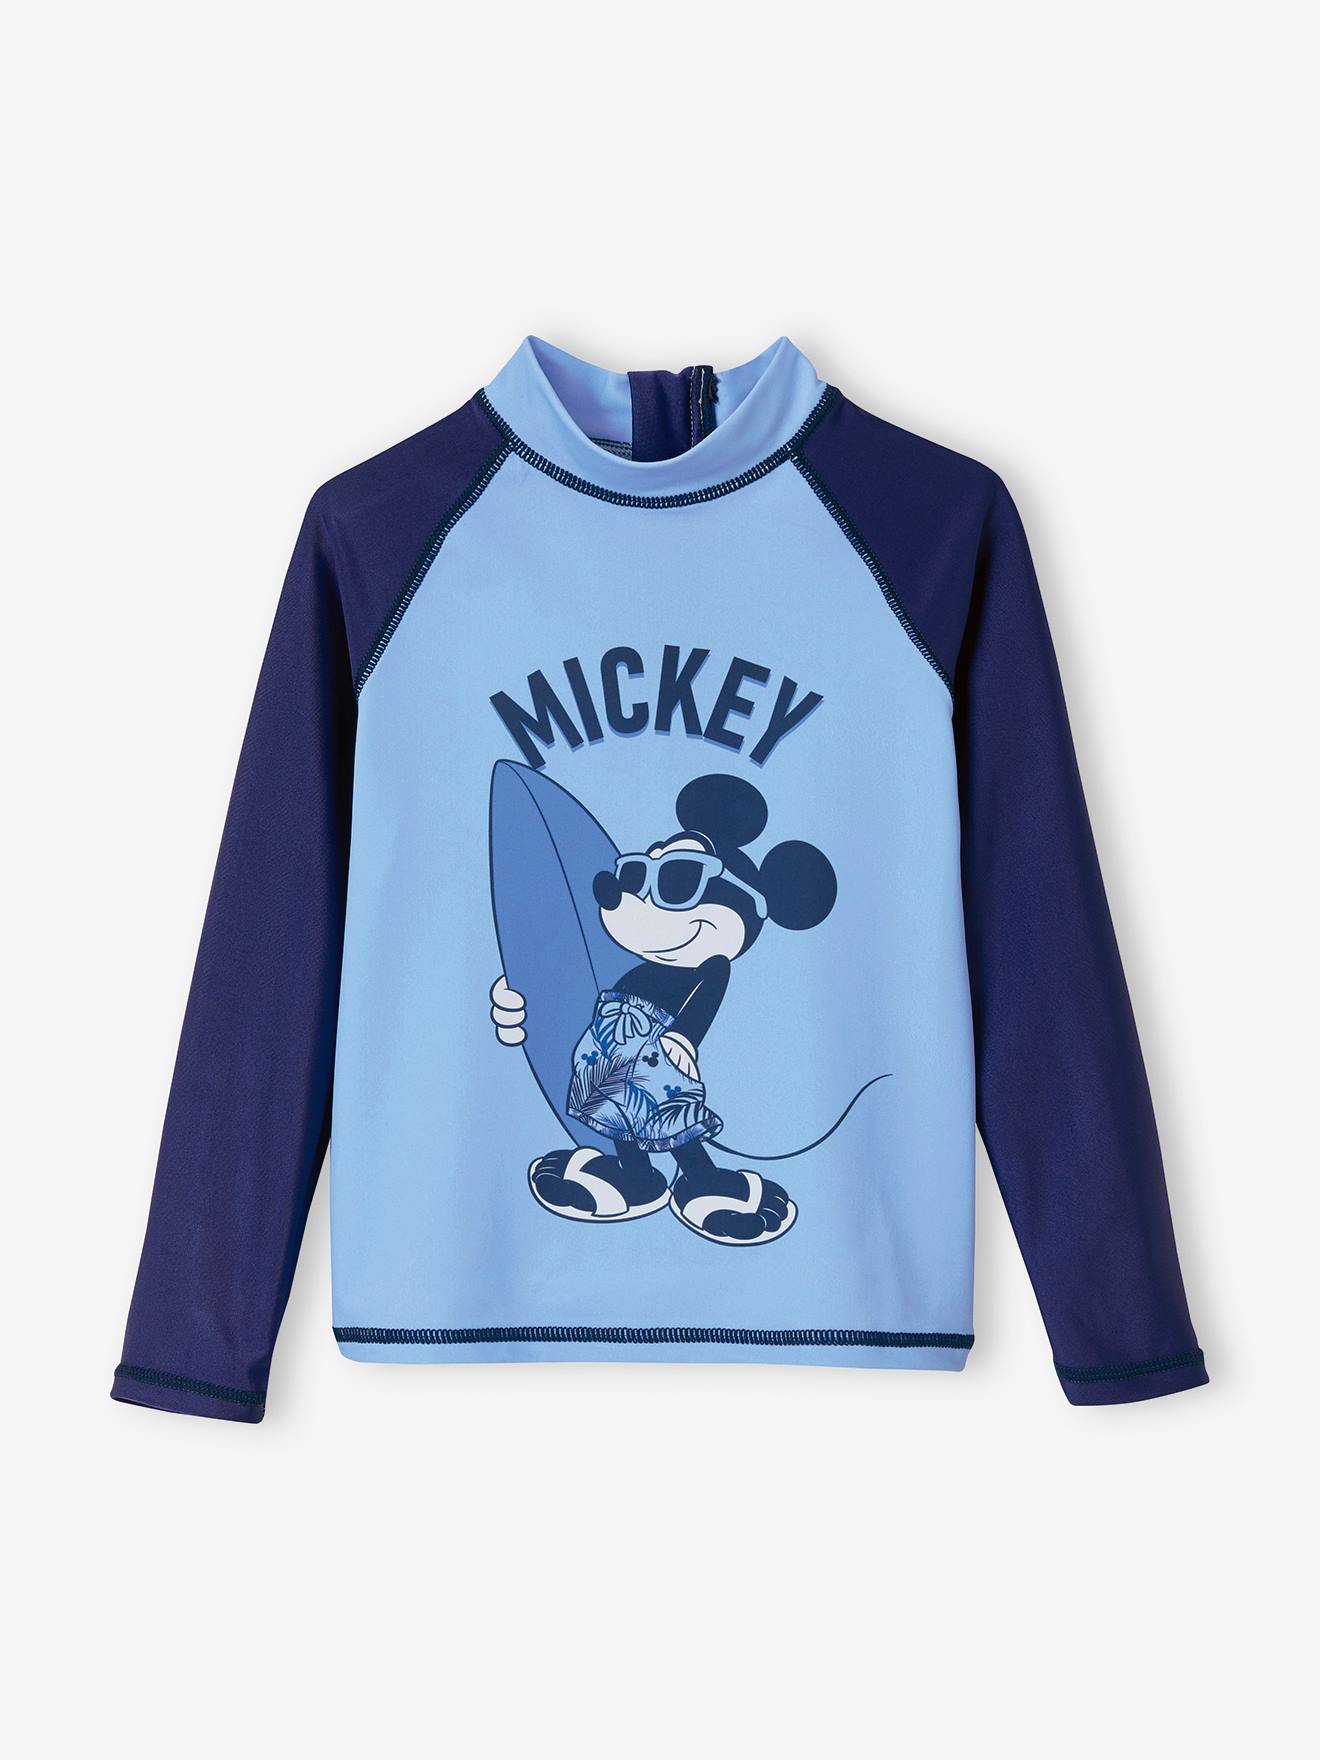 Visiter la boutique DisneyDisney T-shirt pour fille 